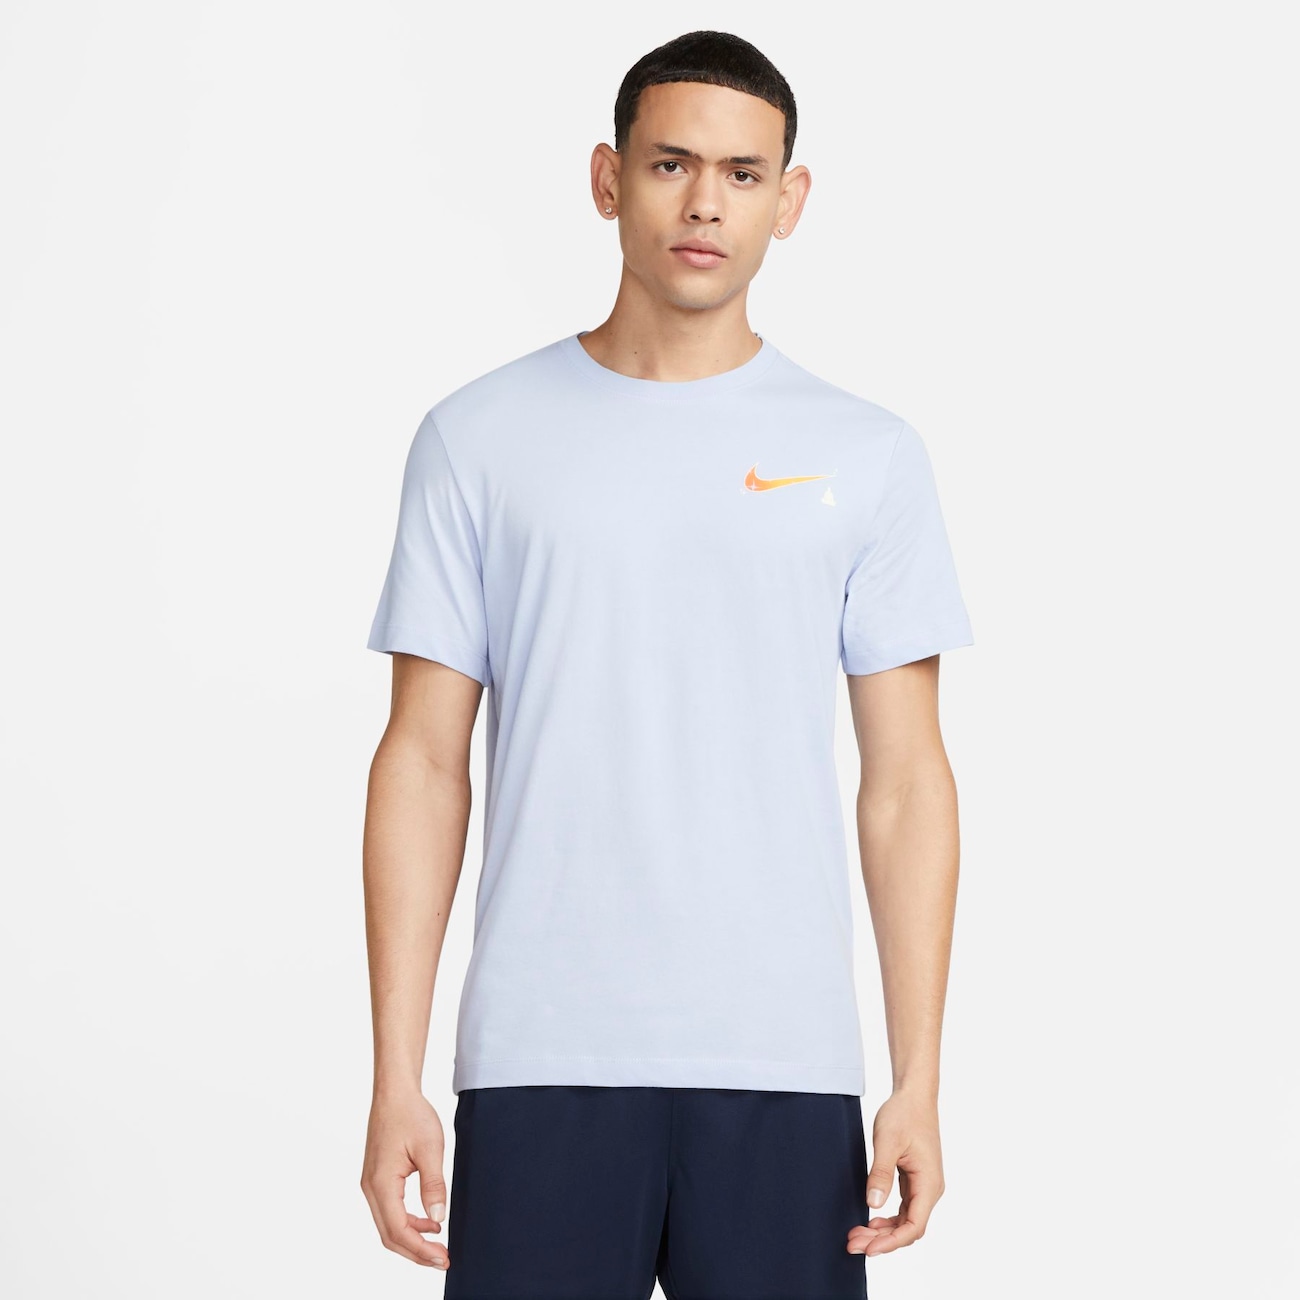 Camiseta Nike Yoga Dri-FIT Masculina - Compre Agora